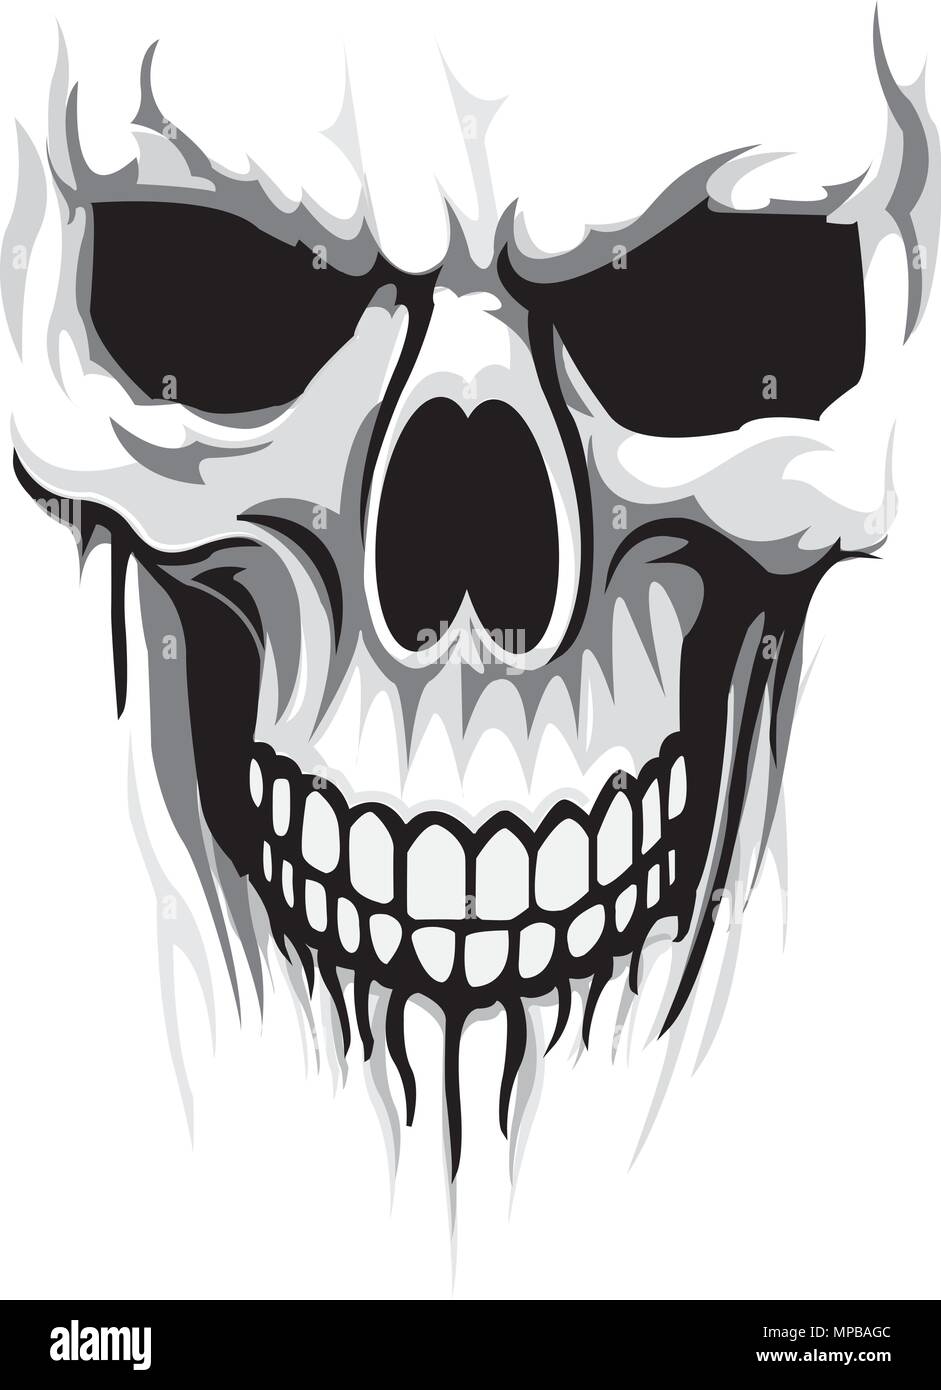 https://c8.alamy.com/comp/MPBAGC/vector-skull-head-print-design-vector-illustration-MPBAGC.jpg